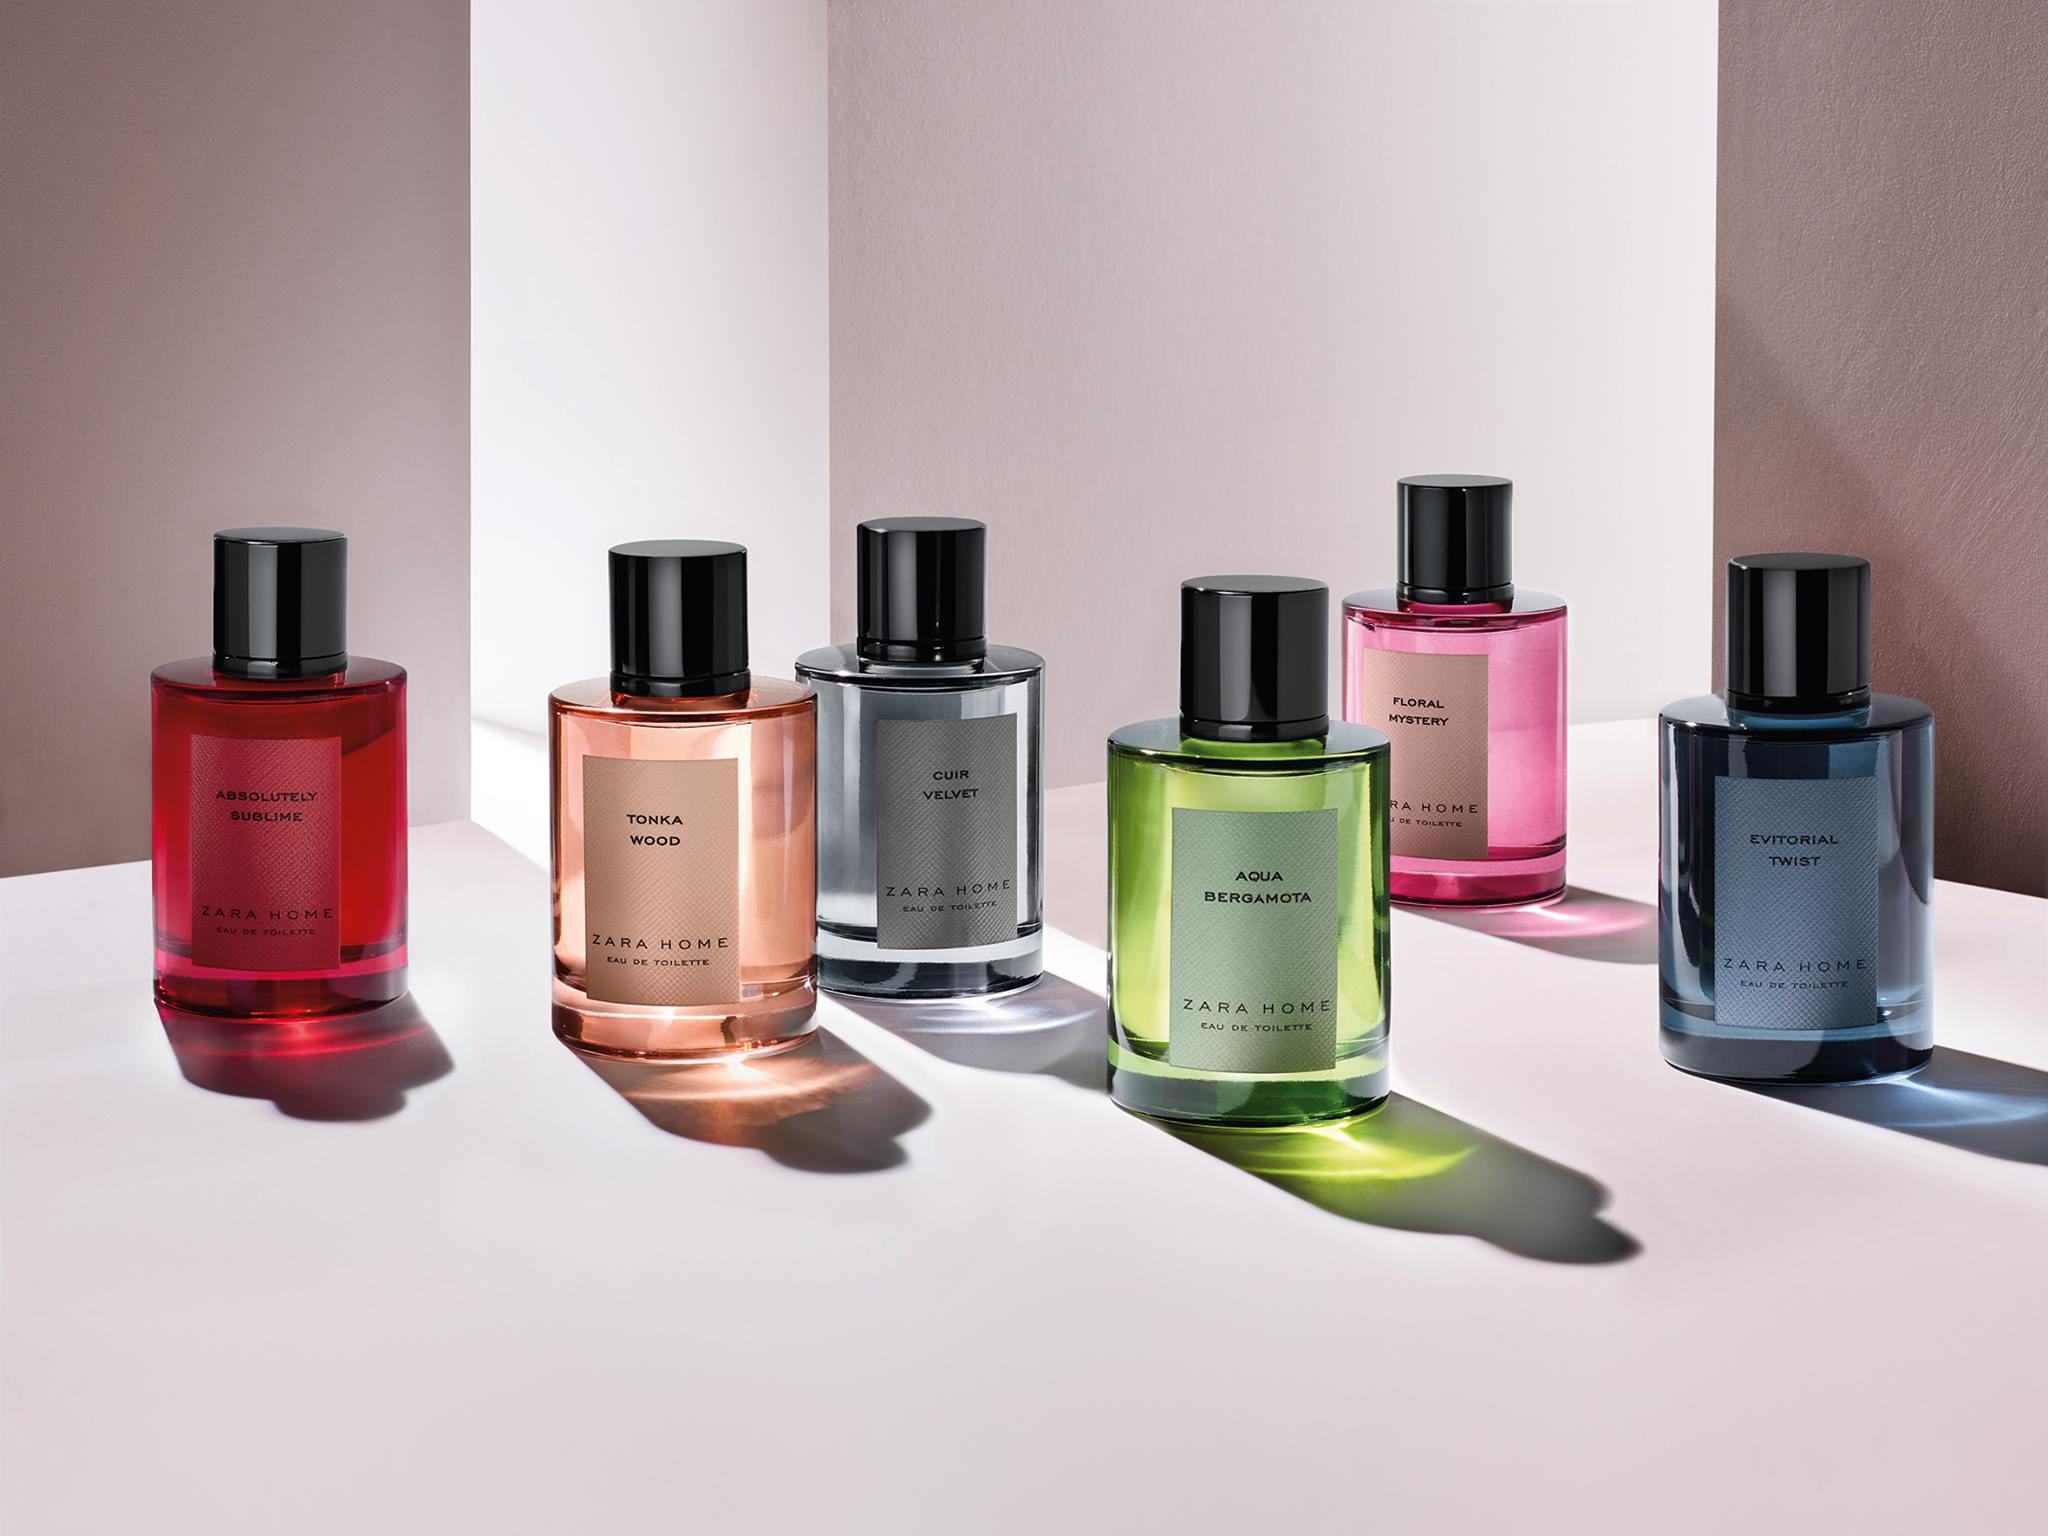 Cuir Velvet Zara Home perfume a fragrance for women and men 2016